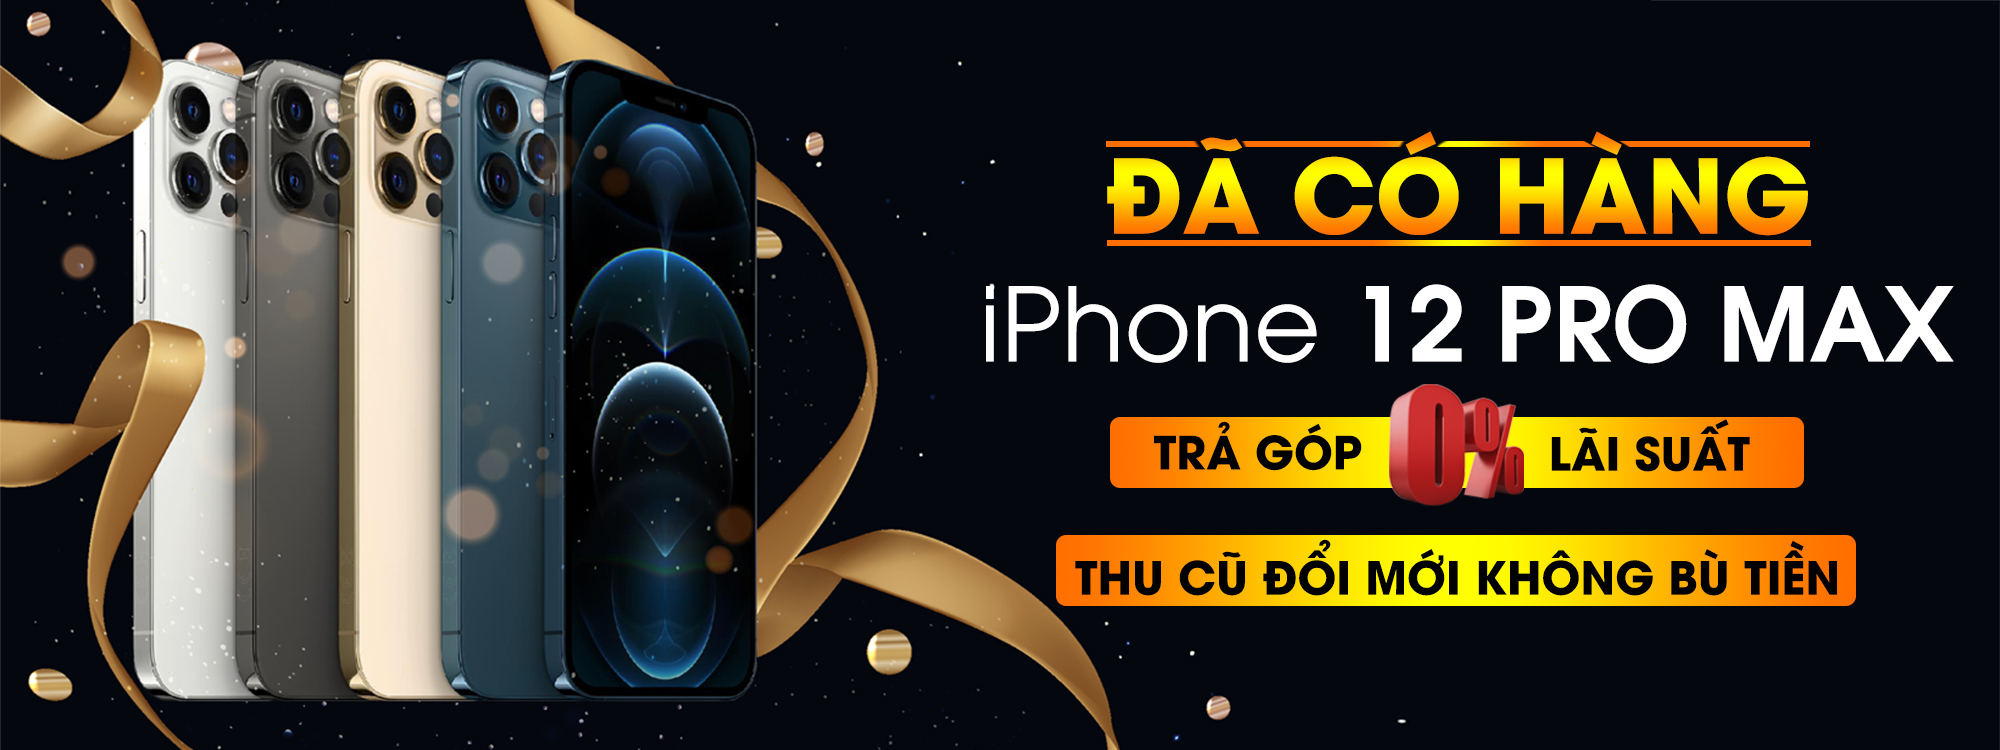 iPhone 12 giá tốt nhất SG tại didonggiakho chỉ từ 18.490K.Hỗ trợ góp 0% - 14